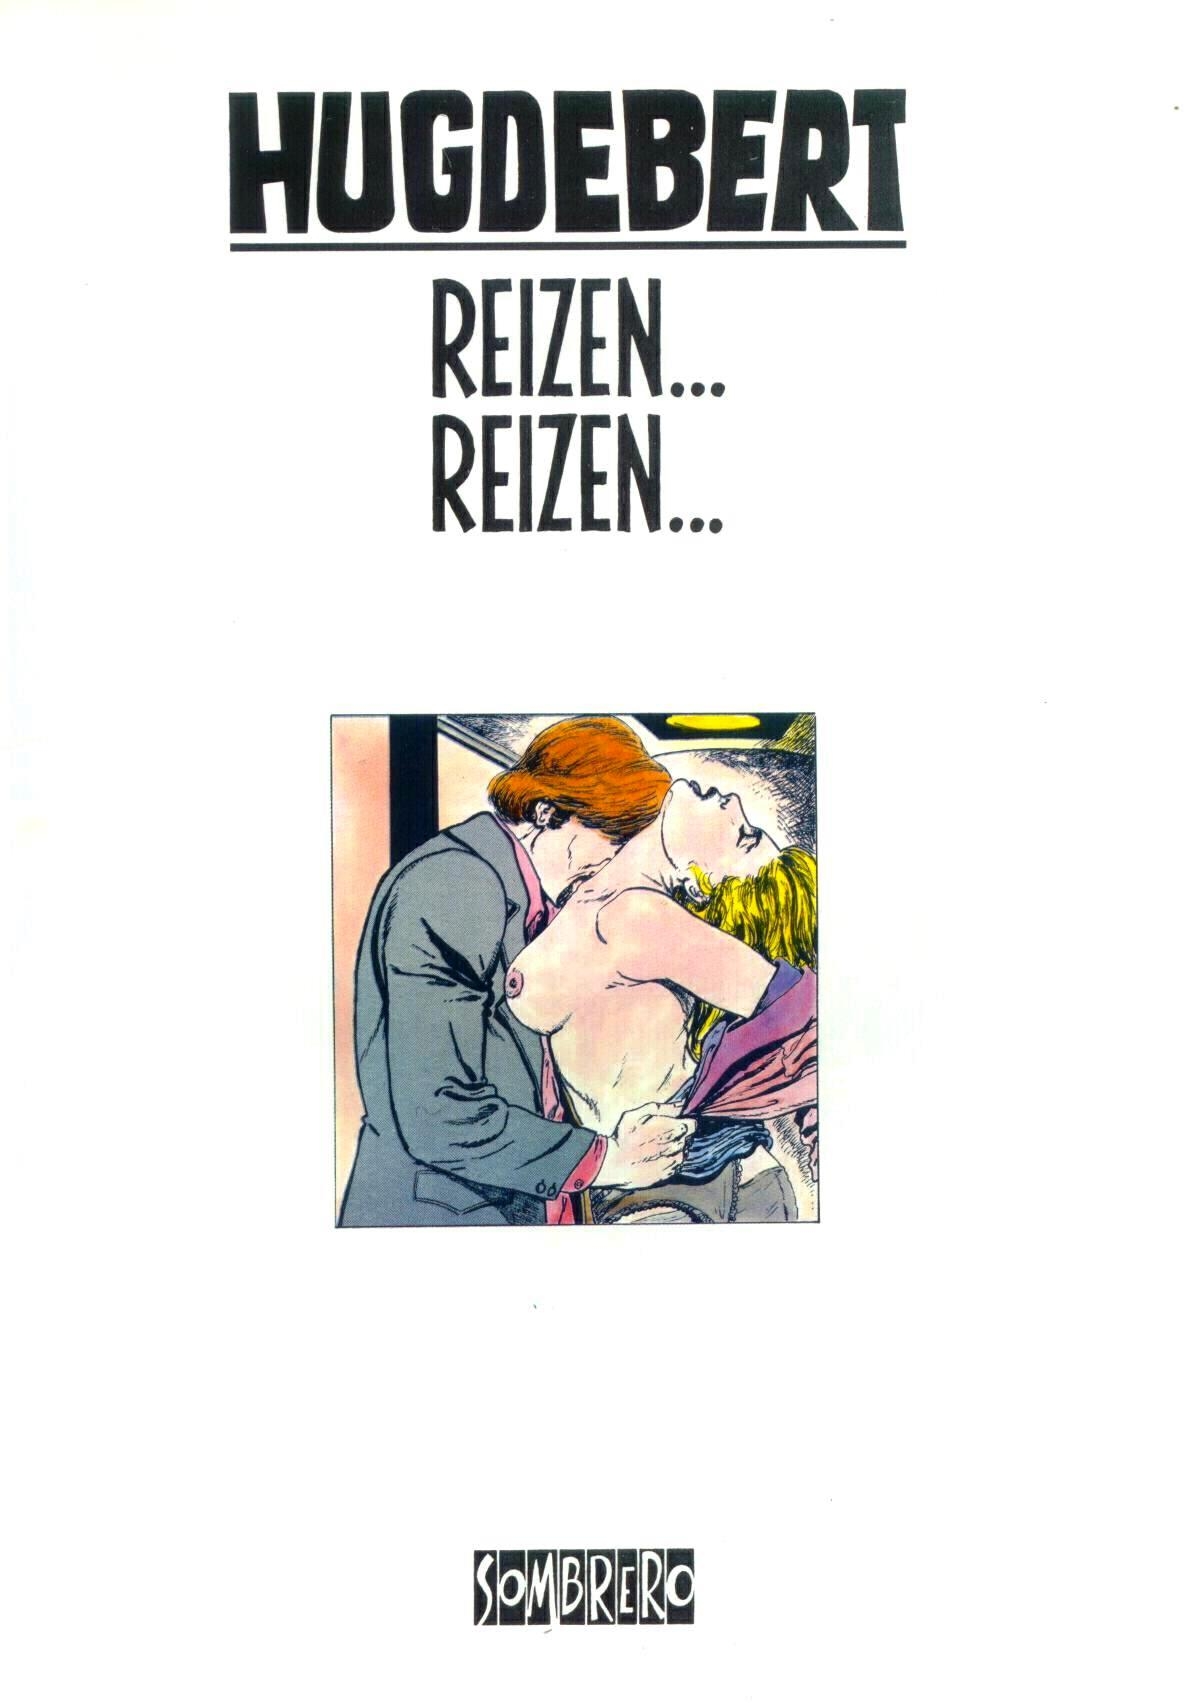 Reizen...reizen (Dutch) 1